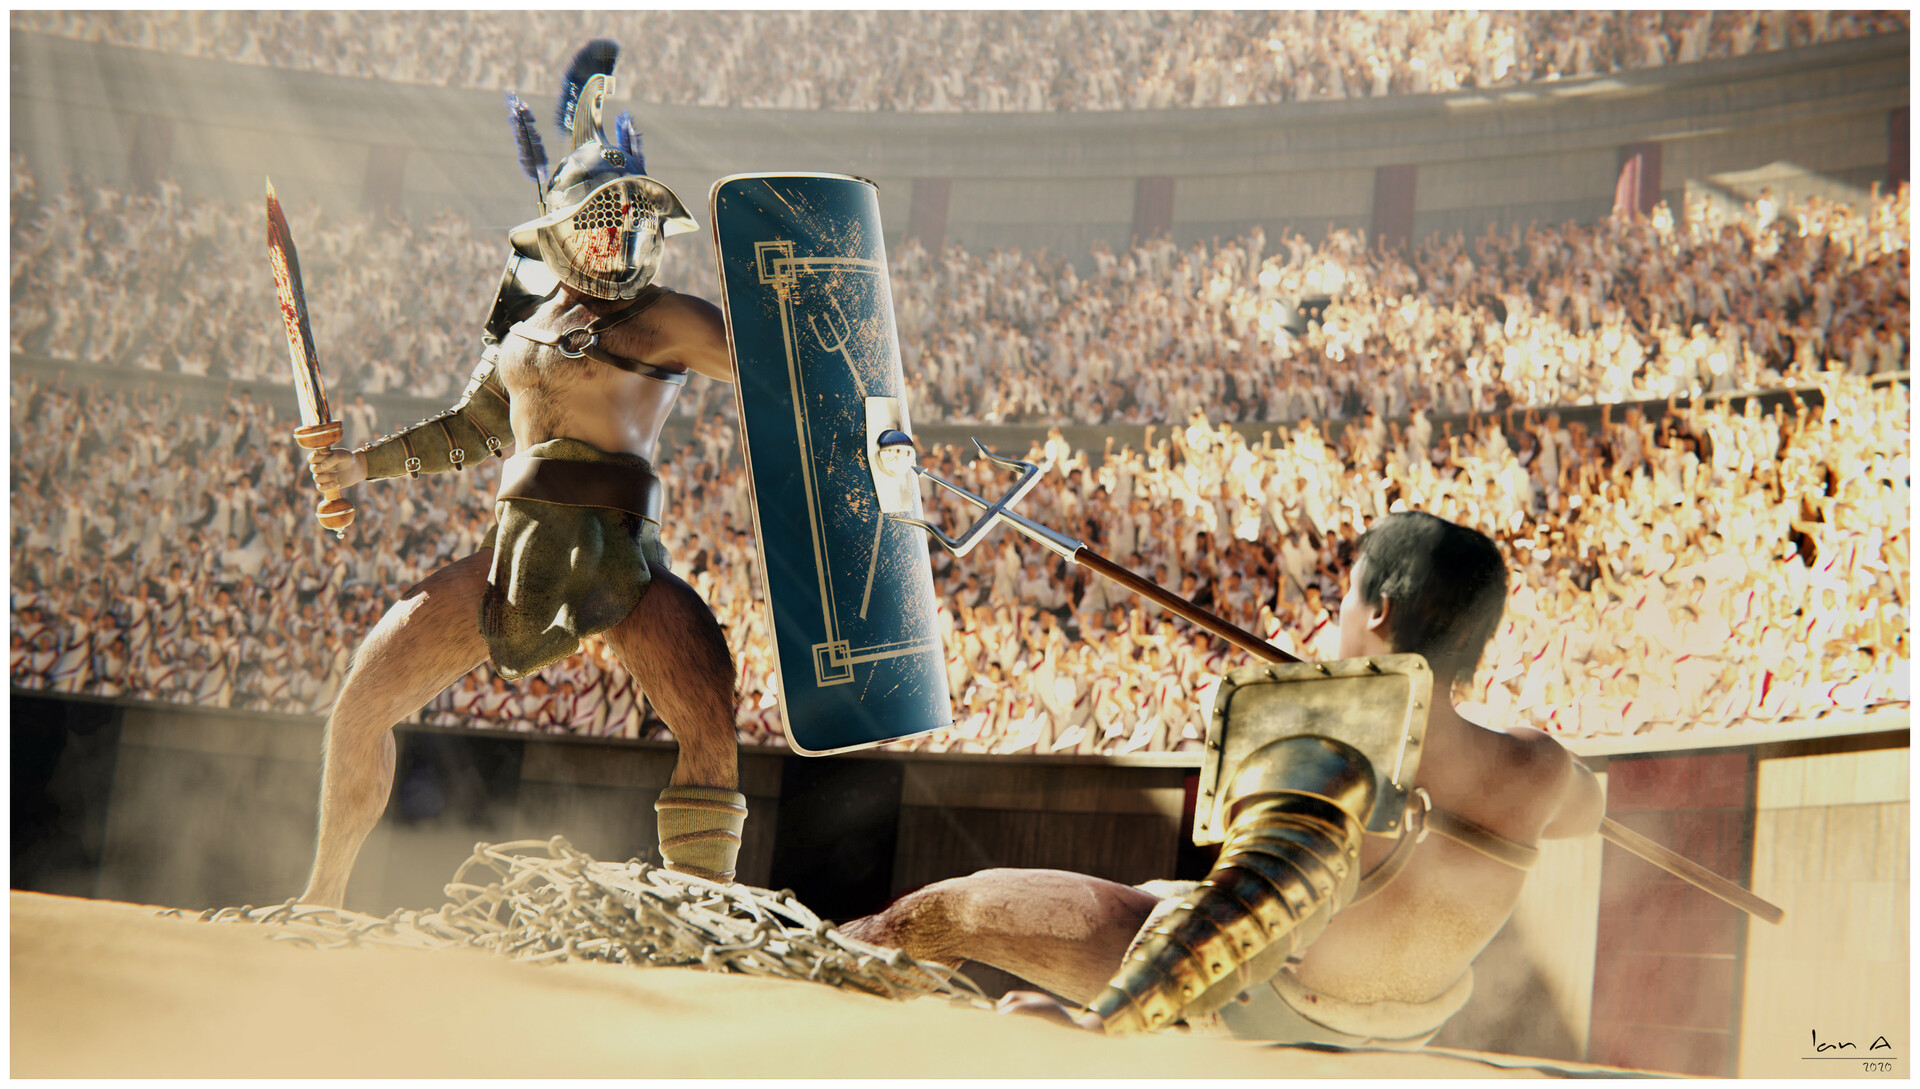 [IMAGE:https://cdna.artstation.com/p/assets/images/images/027/081/114/large/ian-a-gladiators-scene-4a.jpg]